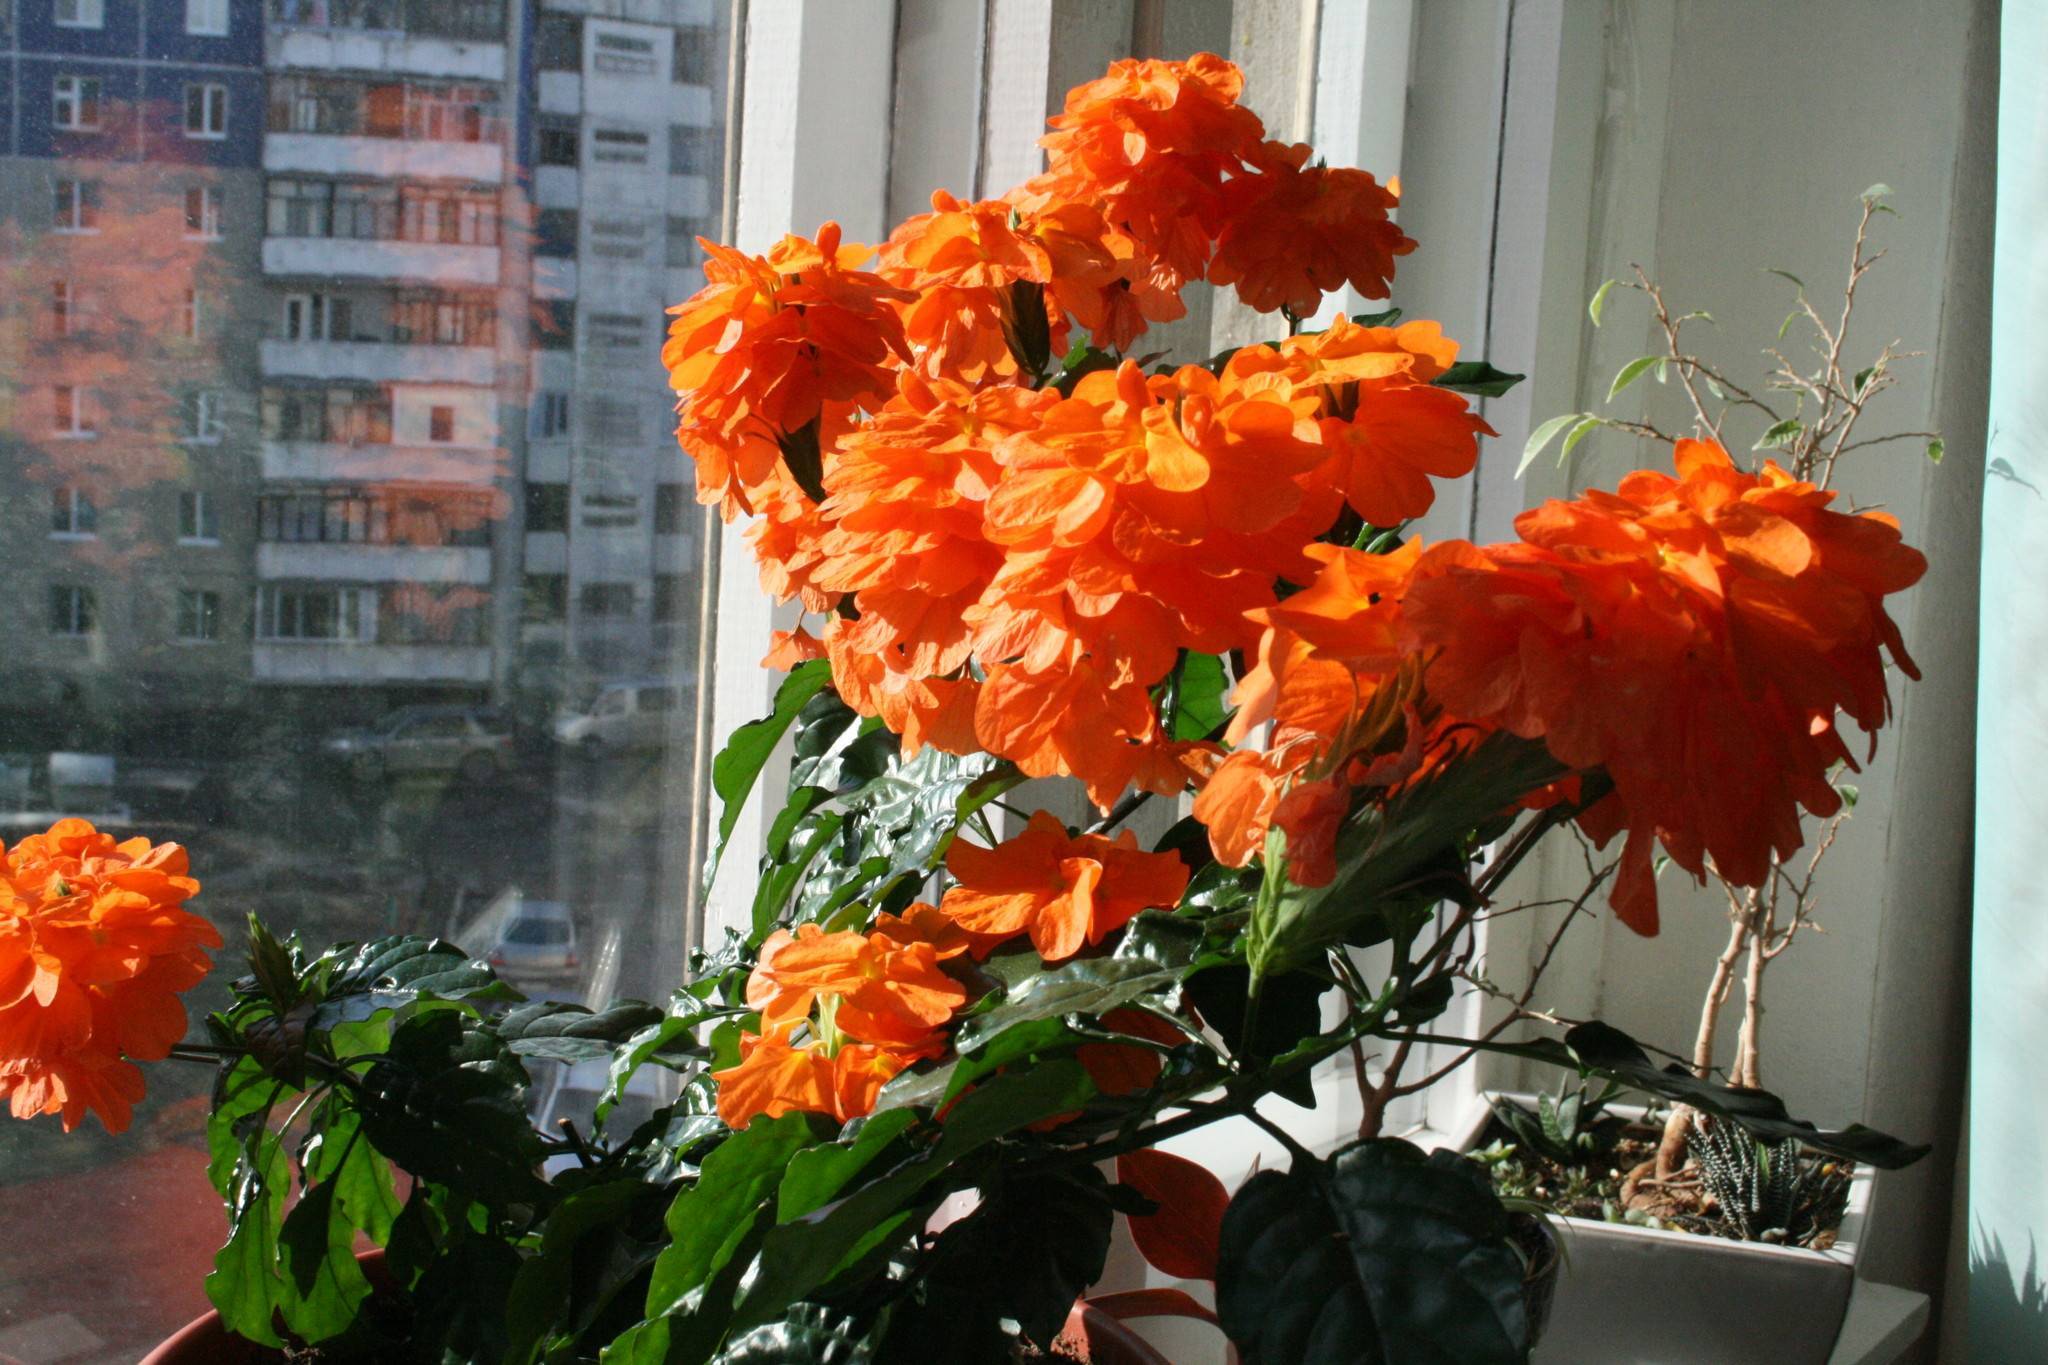 Домашний цветок кроссандра: уход за лиственным полукустарником, полив, пересадка и размножение культуры с оригинальными воронковидными цветами